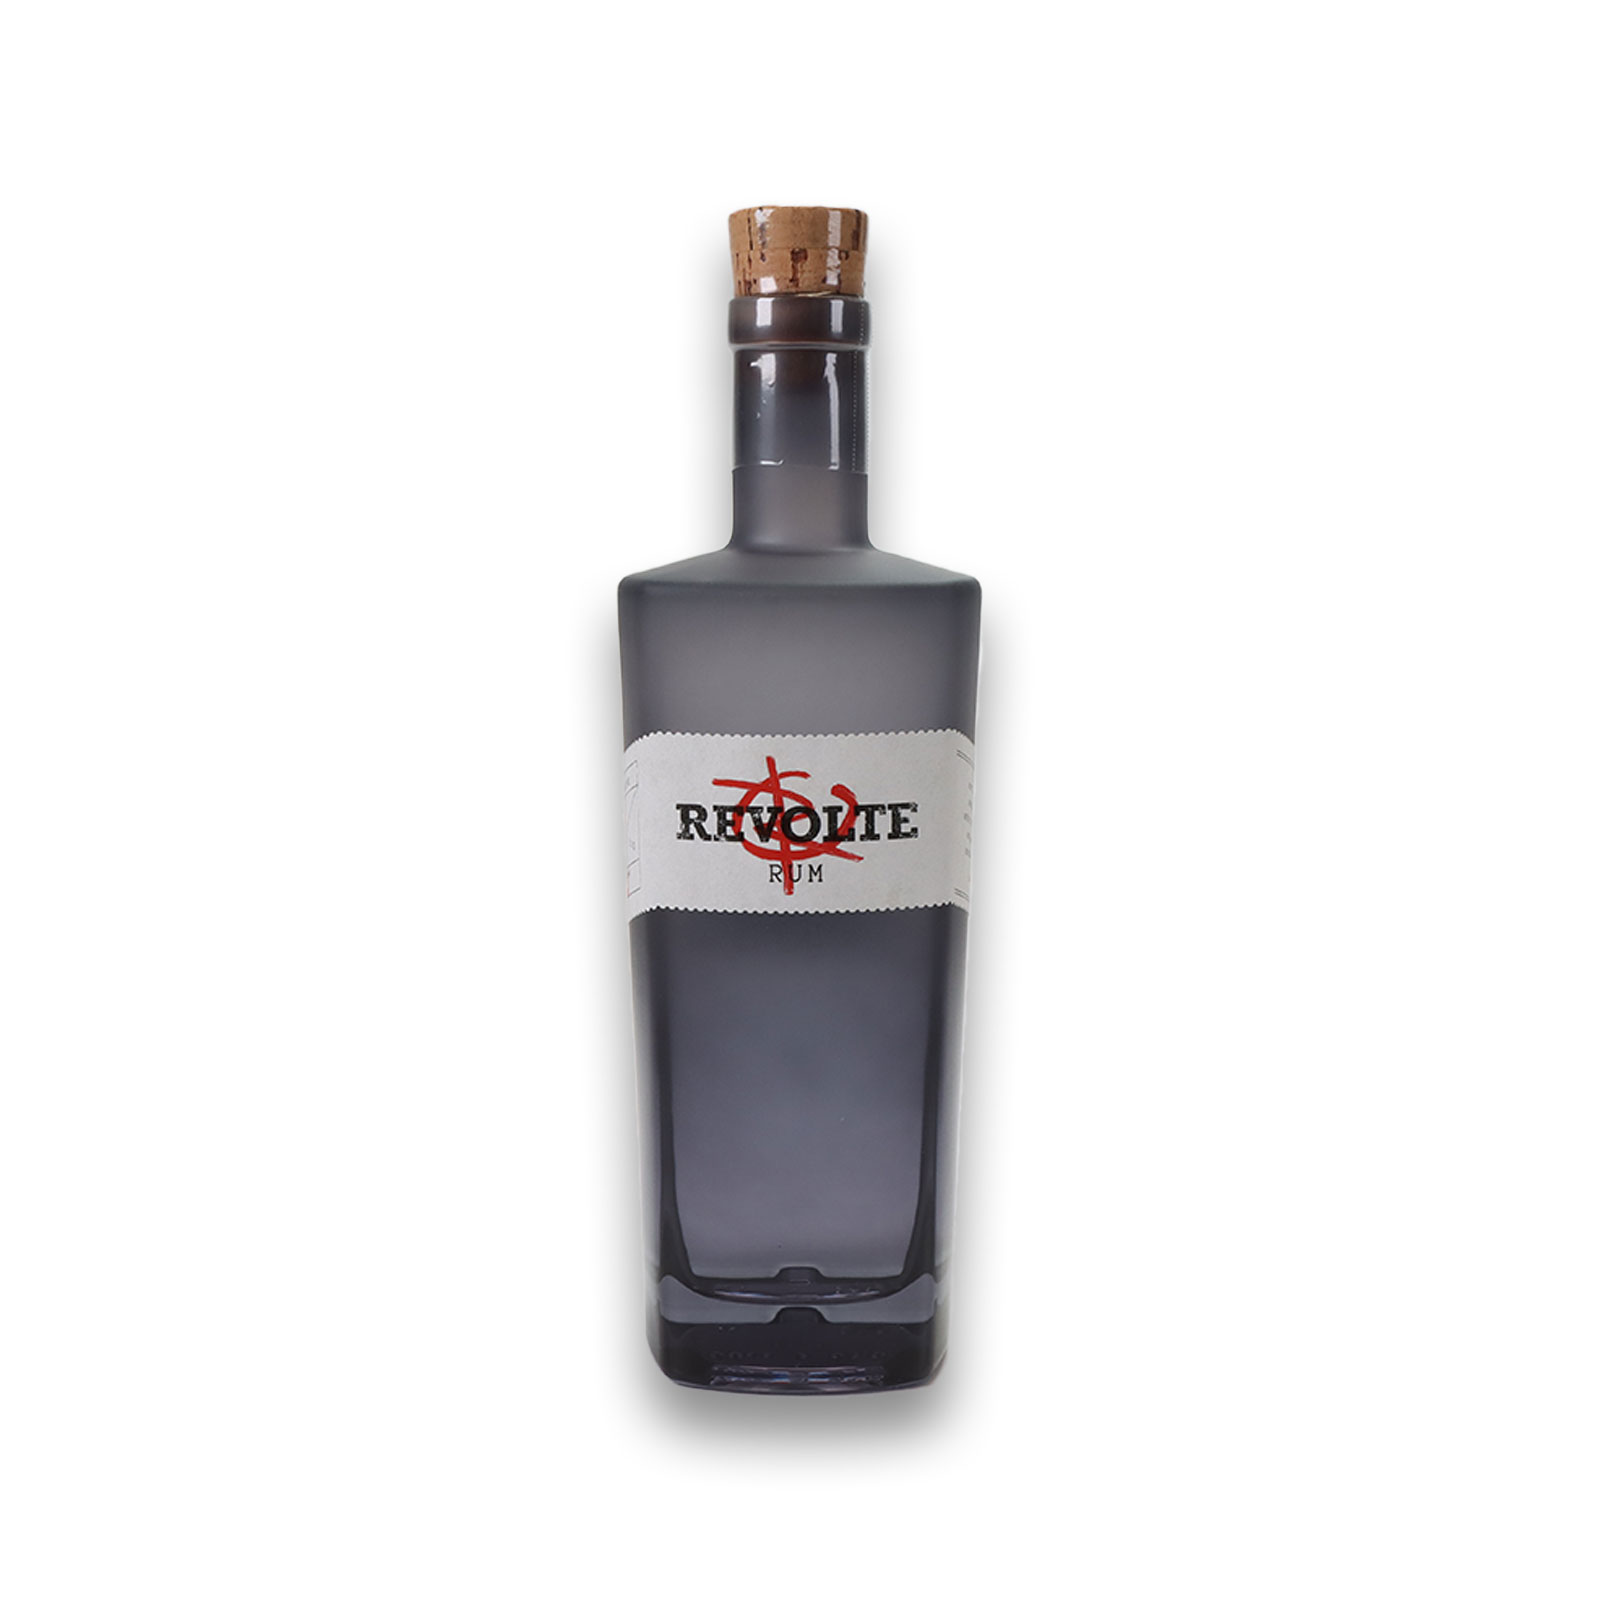 Der Revolte Rum blanco wird von der Destille Kaltenthaler hergestellt.